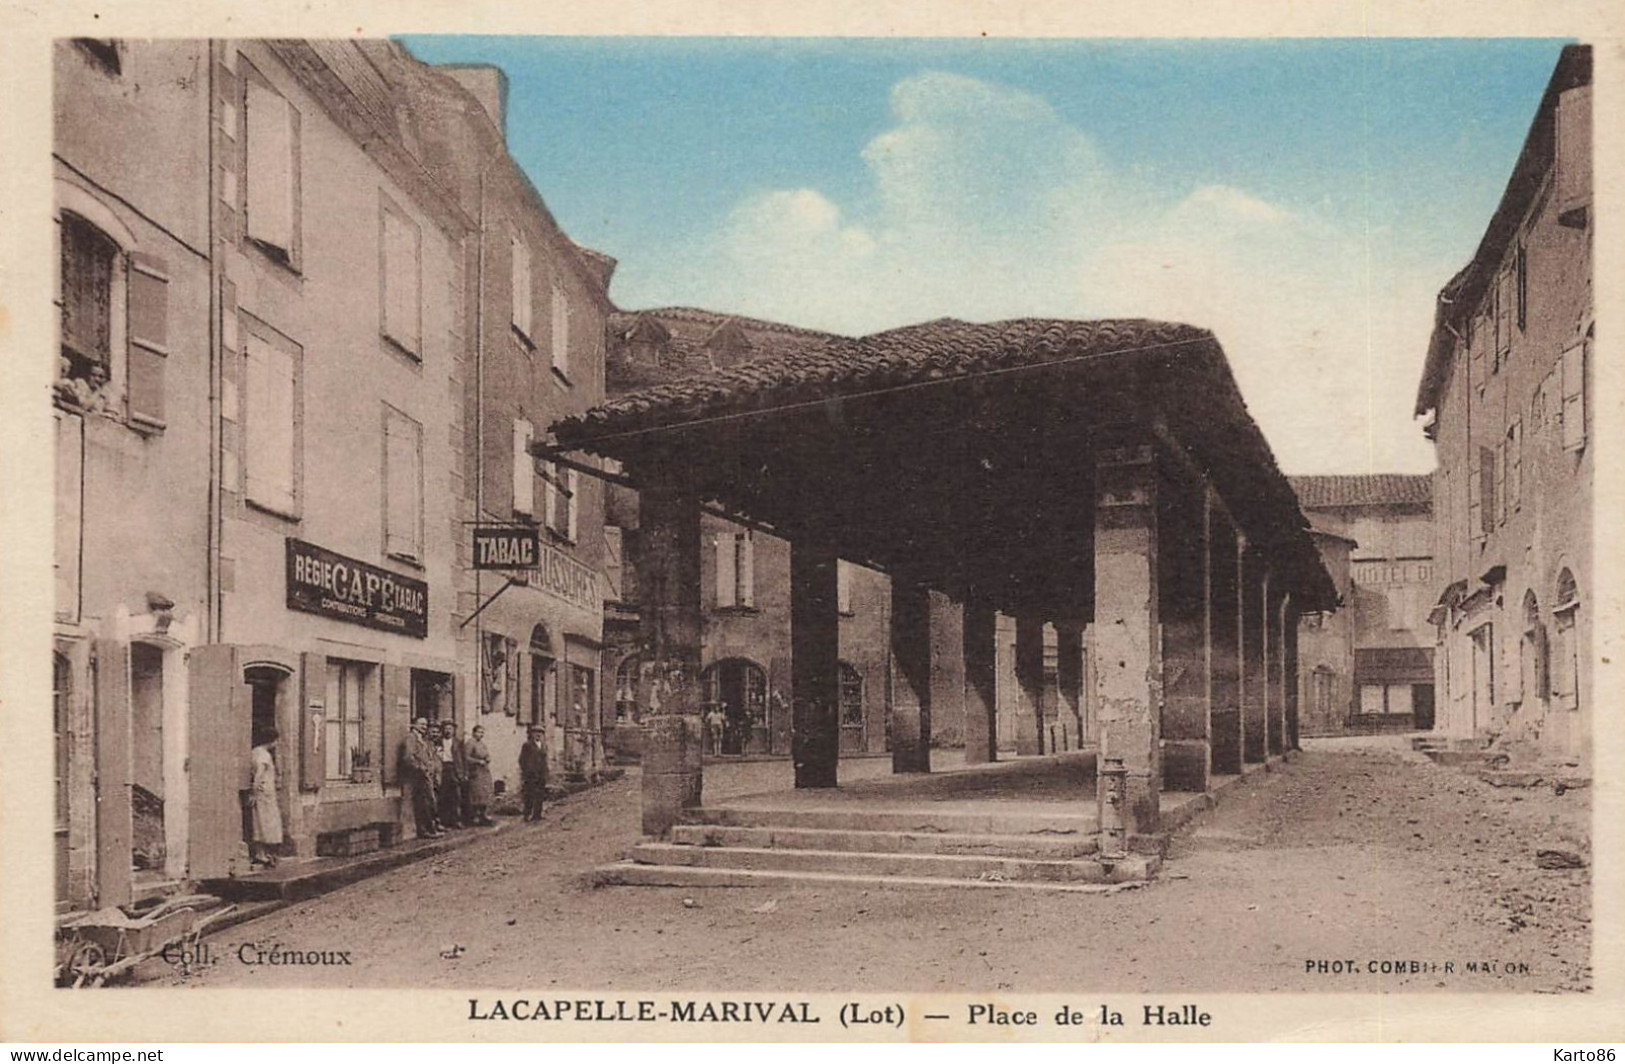 Lacapelle Marival * Place De La Halle Du Village * Débit De Tabac Tabacs TABAC Régie * Magasin Chaussures * Villageois - Lacapelle Marival